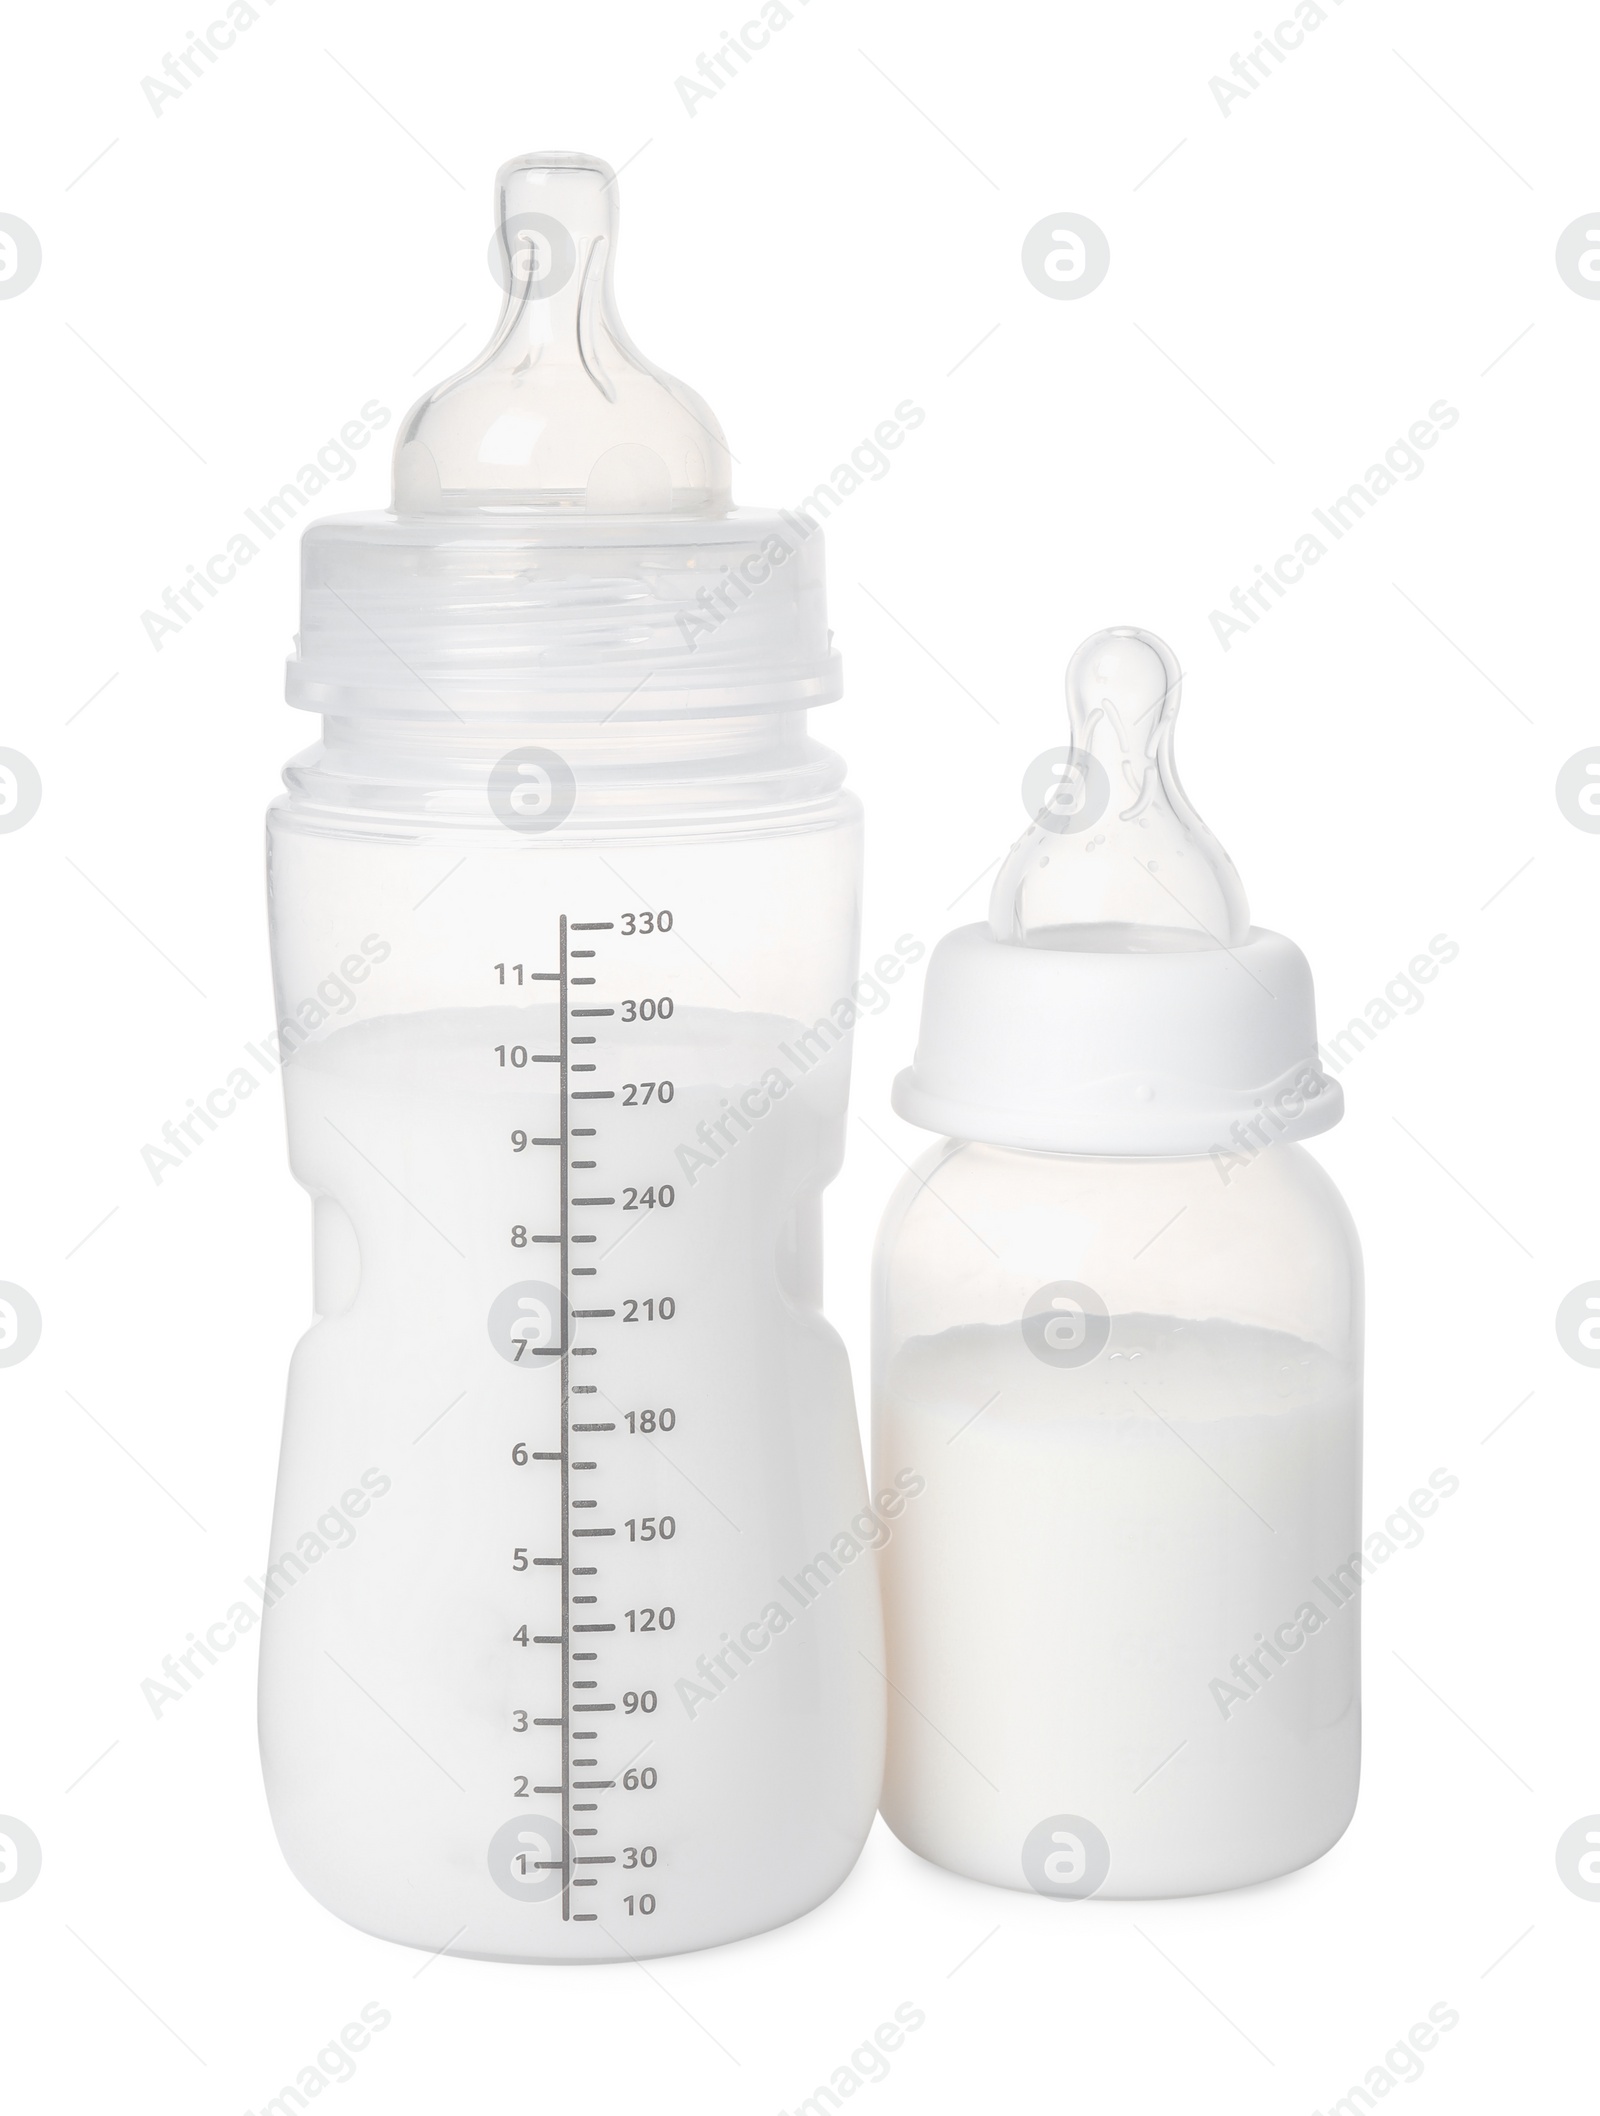 Photo of Two feeding bottles with infant formula on white background